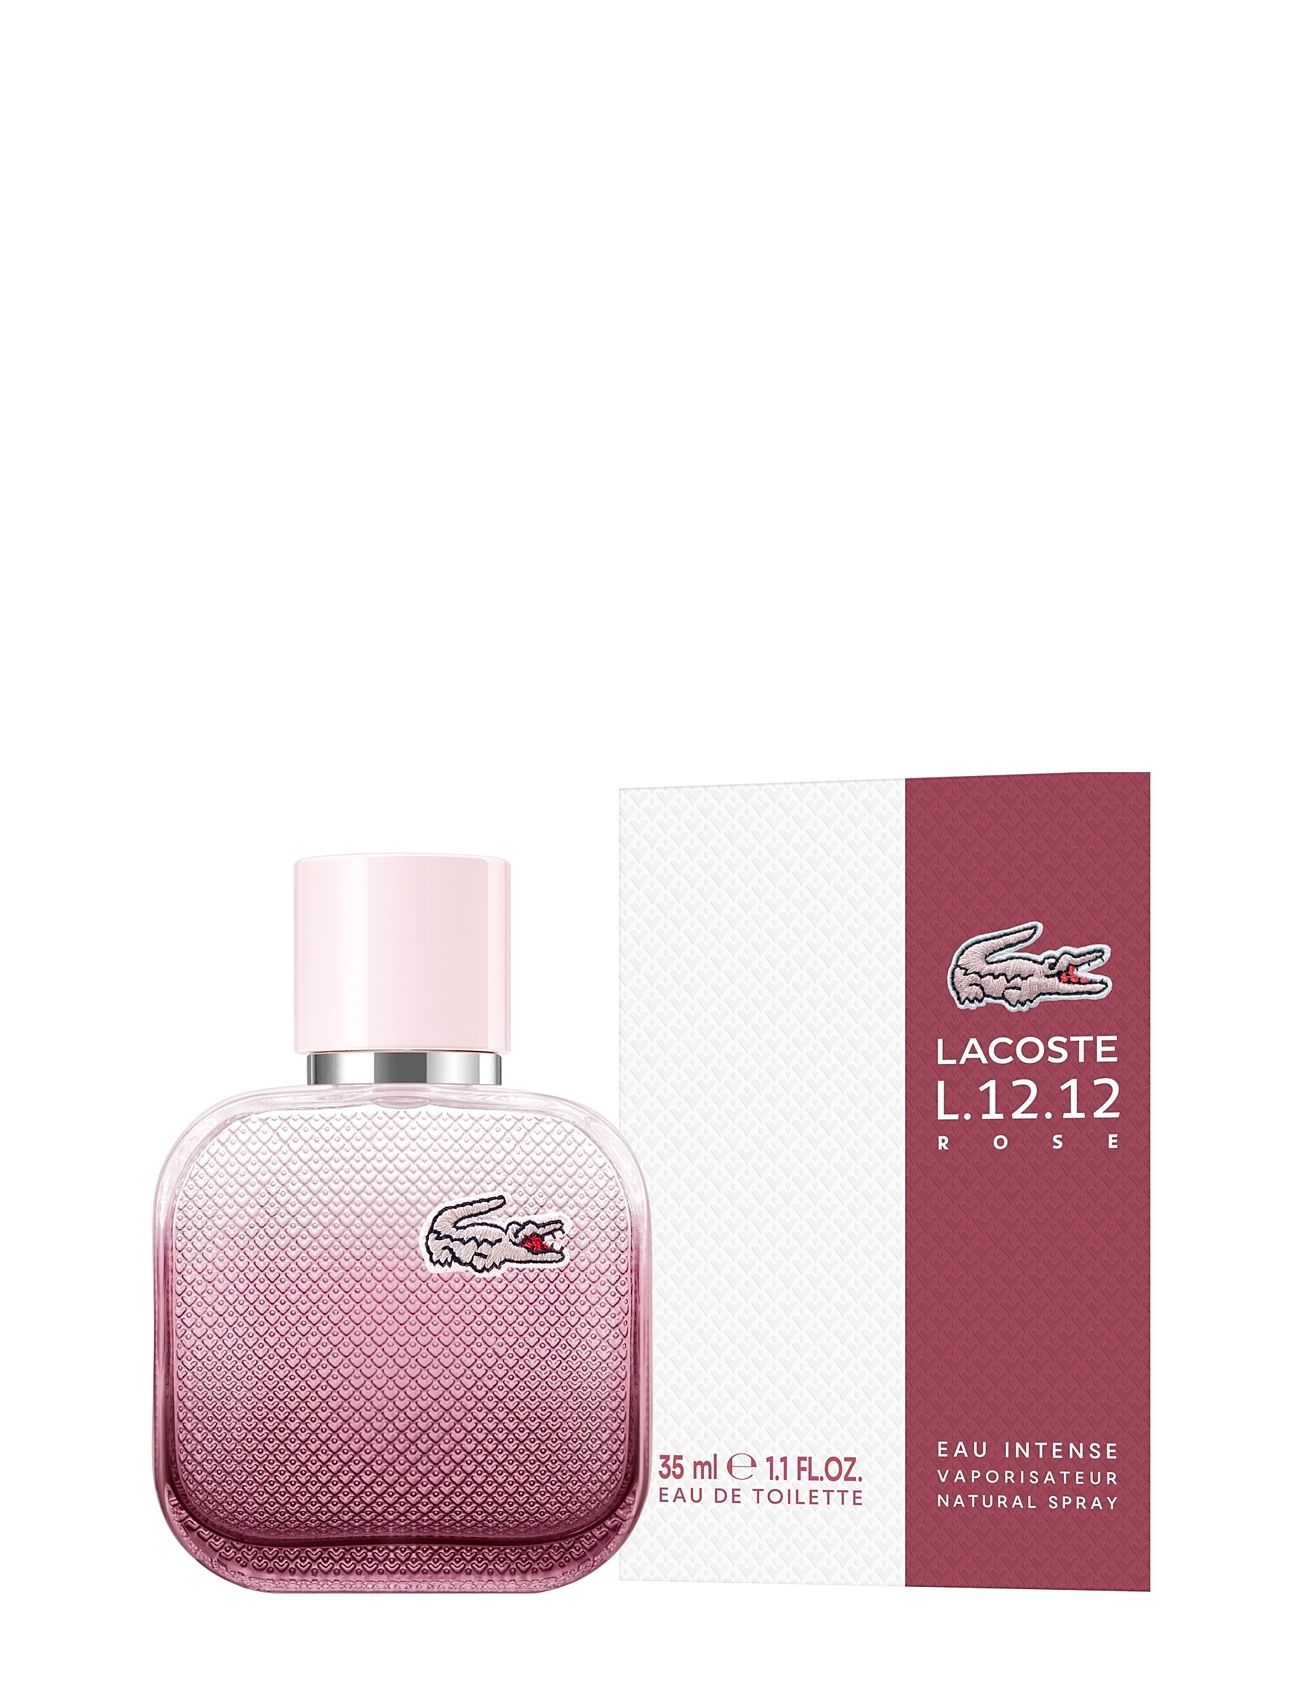 Gedehams ekspedition censur Lacoste Fragrance Lacoste L.12.12 Eau Intense Pour Elle Eau De Toilette 35  Ml - Parfume | Boozt.com